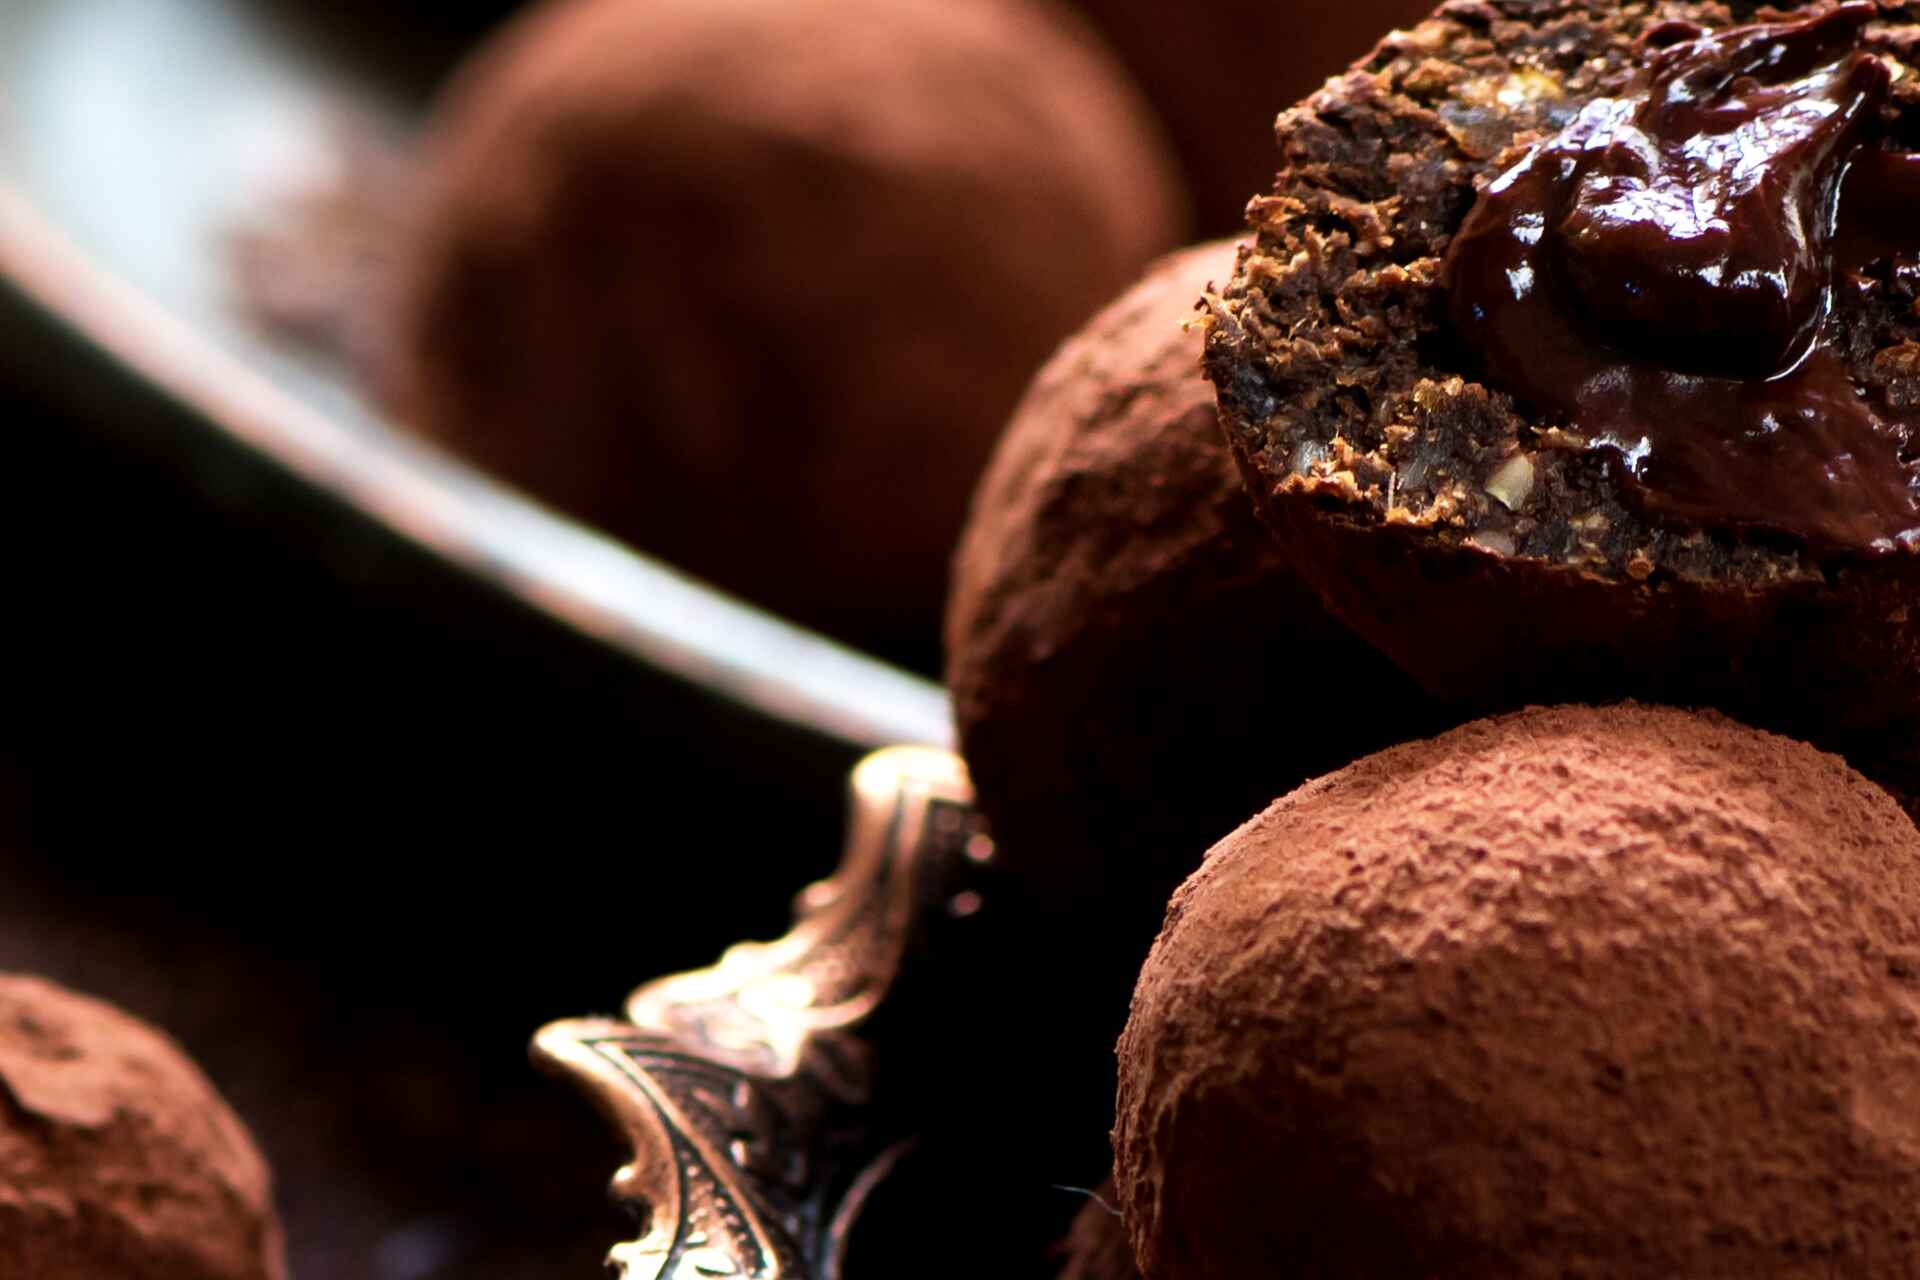 Stefano Gilardi'nin çikolatalı pralinlerin çevrimiçi pazarlaması için web sitesinin oluşturulması